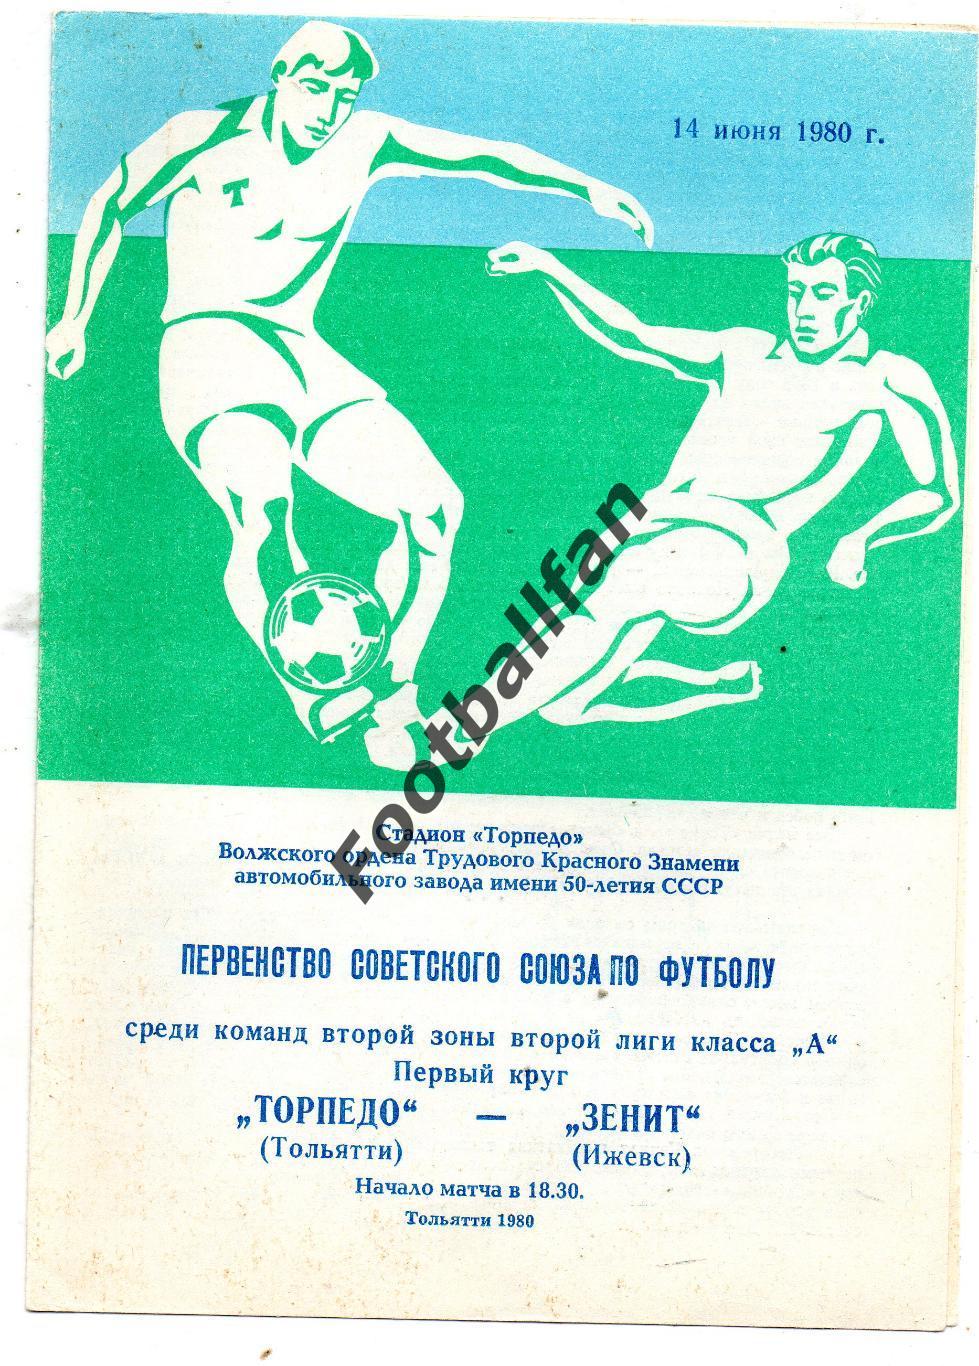 Торпедо Тольятти - Зенит Ижевск 14.06.1980